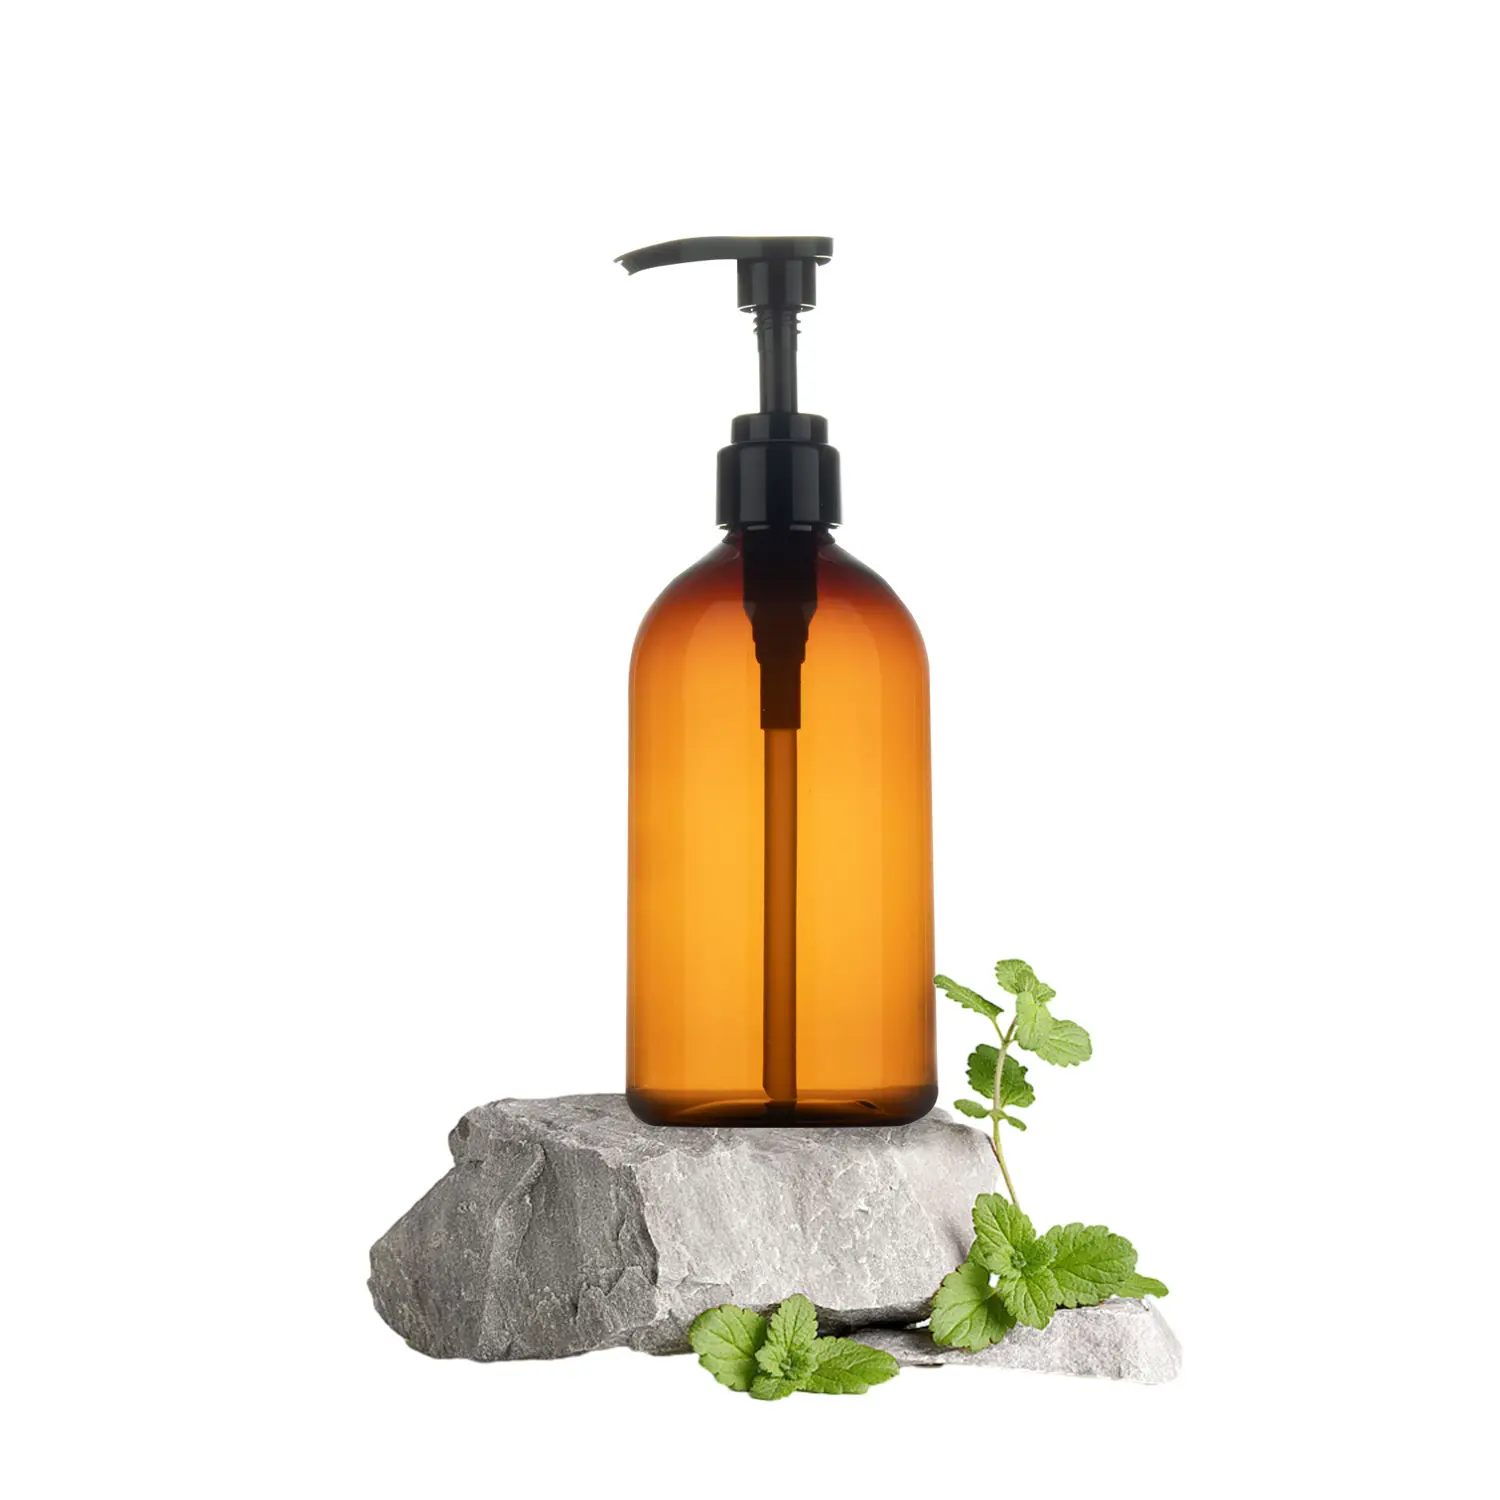 REMAX Venta caliente Explore Brown Translucent 500ml Botellas de loción para creativo con proyectos de bricolaje o embalaje de negocios-Comprar ahora